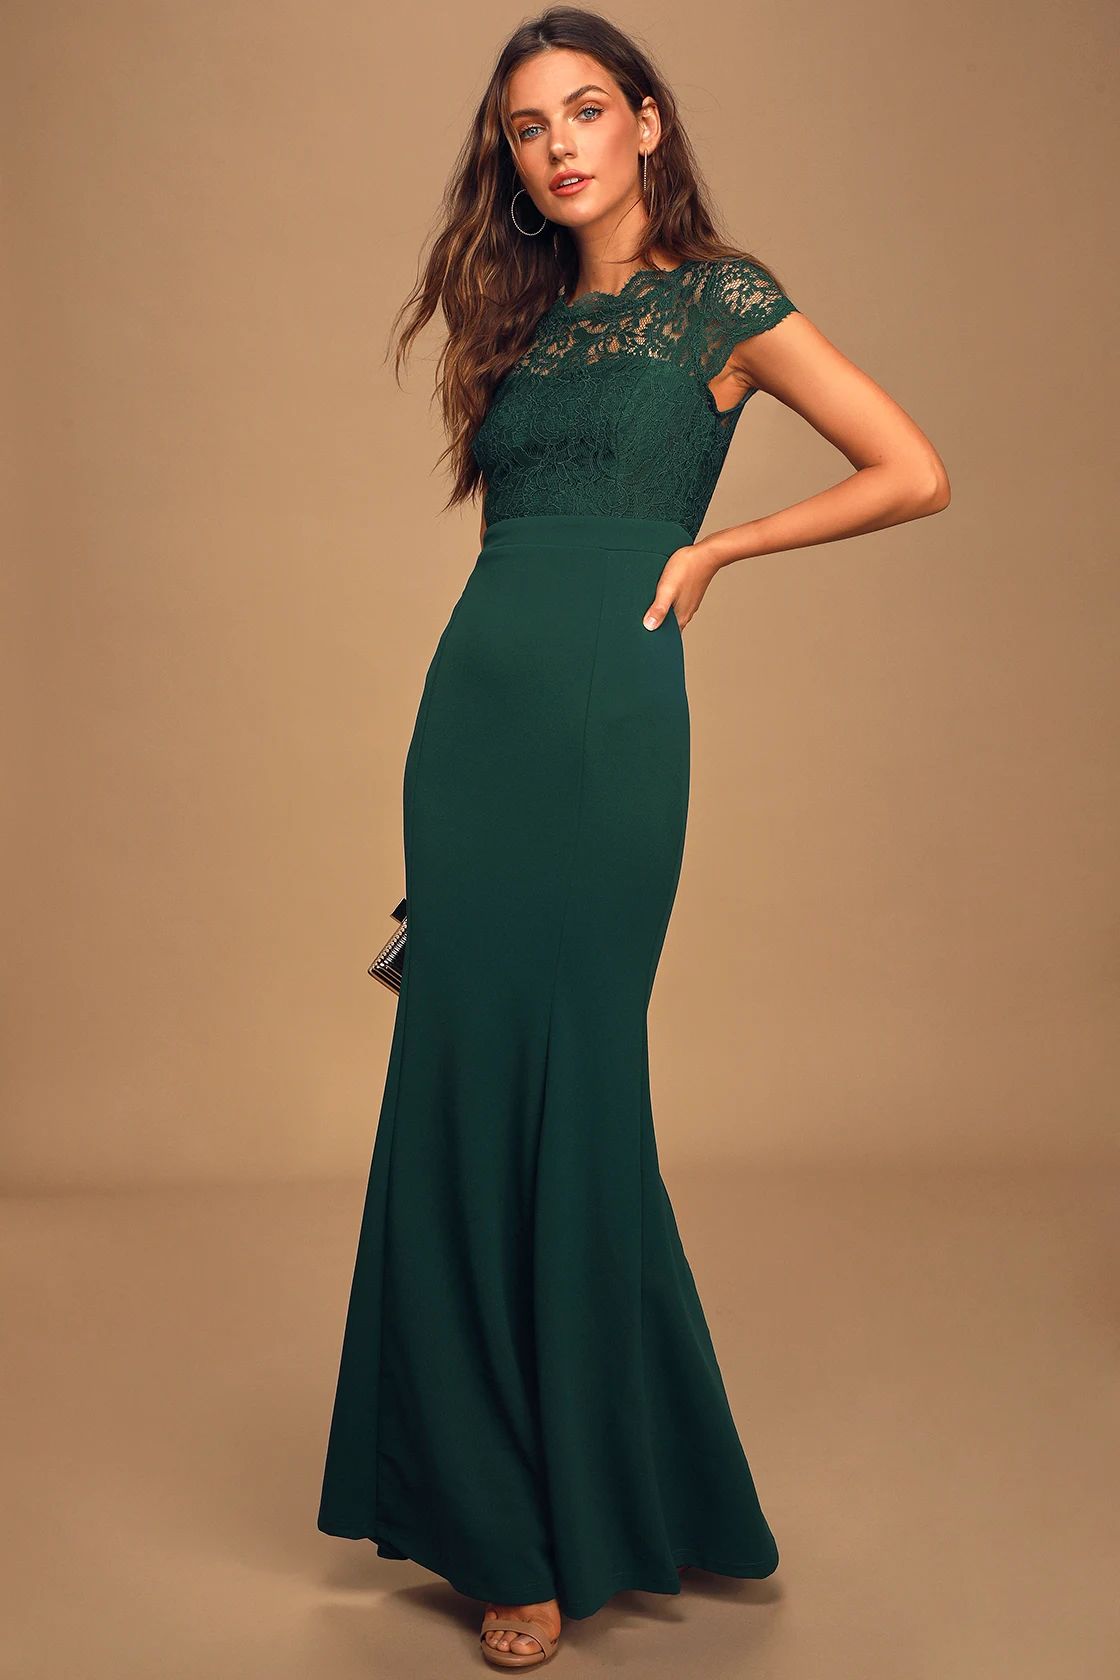 Hopeful Romantic Hunter Green Lace Mermaid Maxi Dress | Lulus